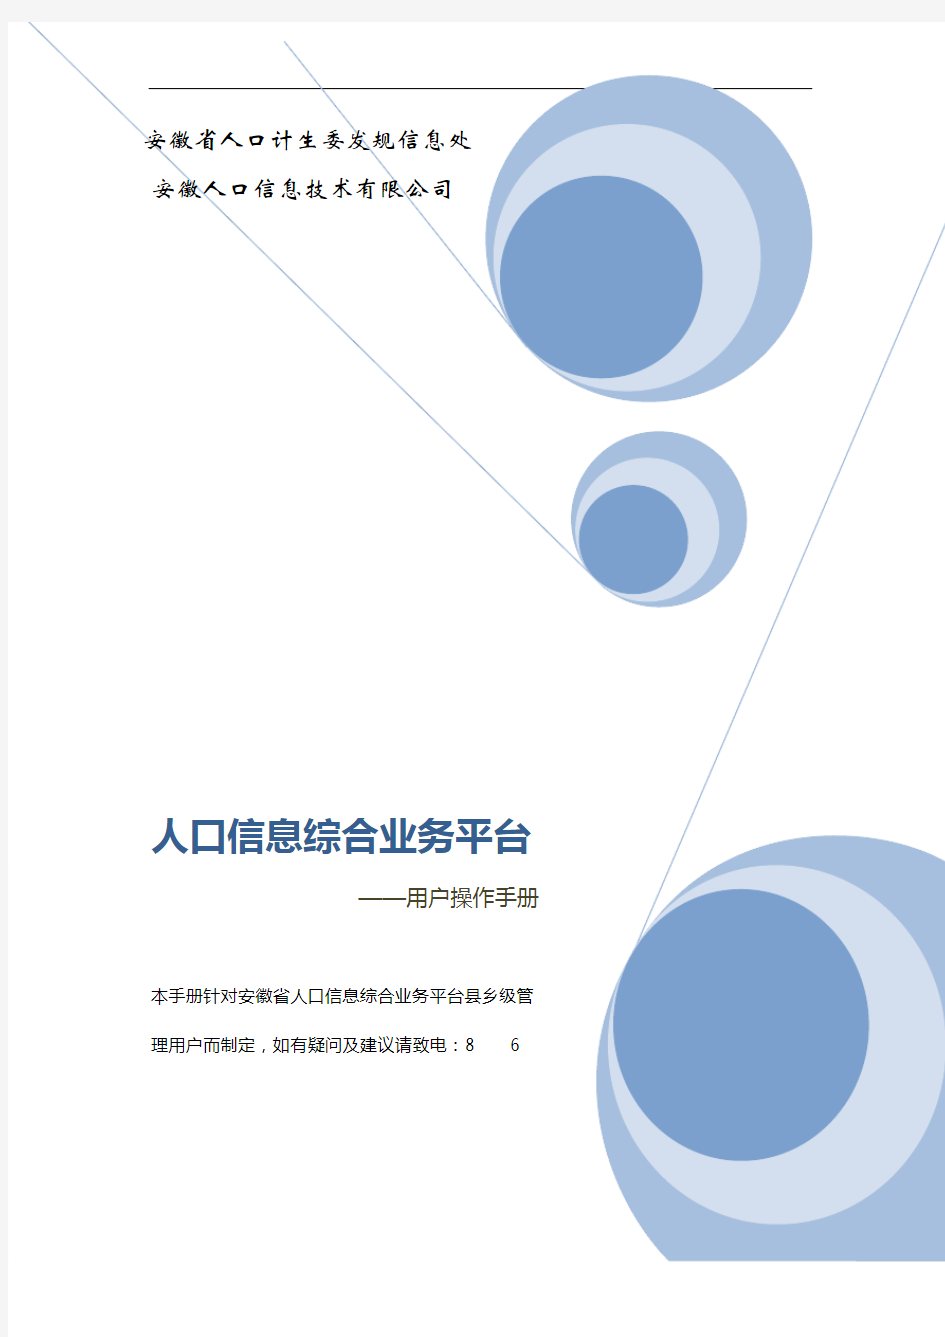 安徽省人口信息综合业务平台操作手册(V1.0)